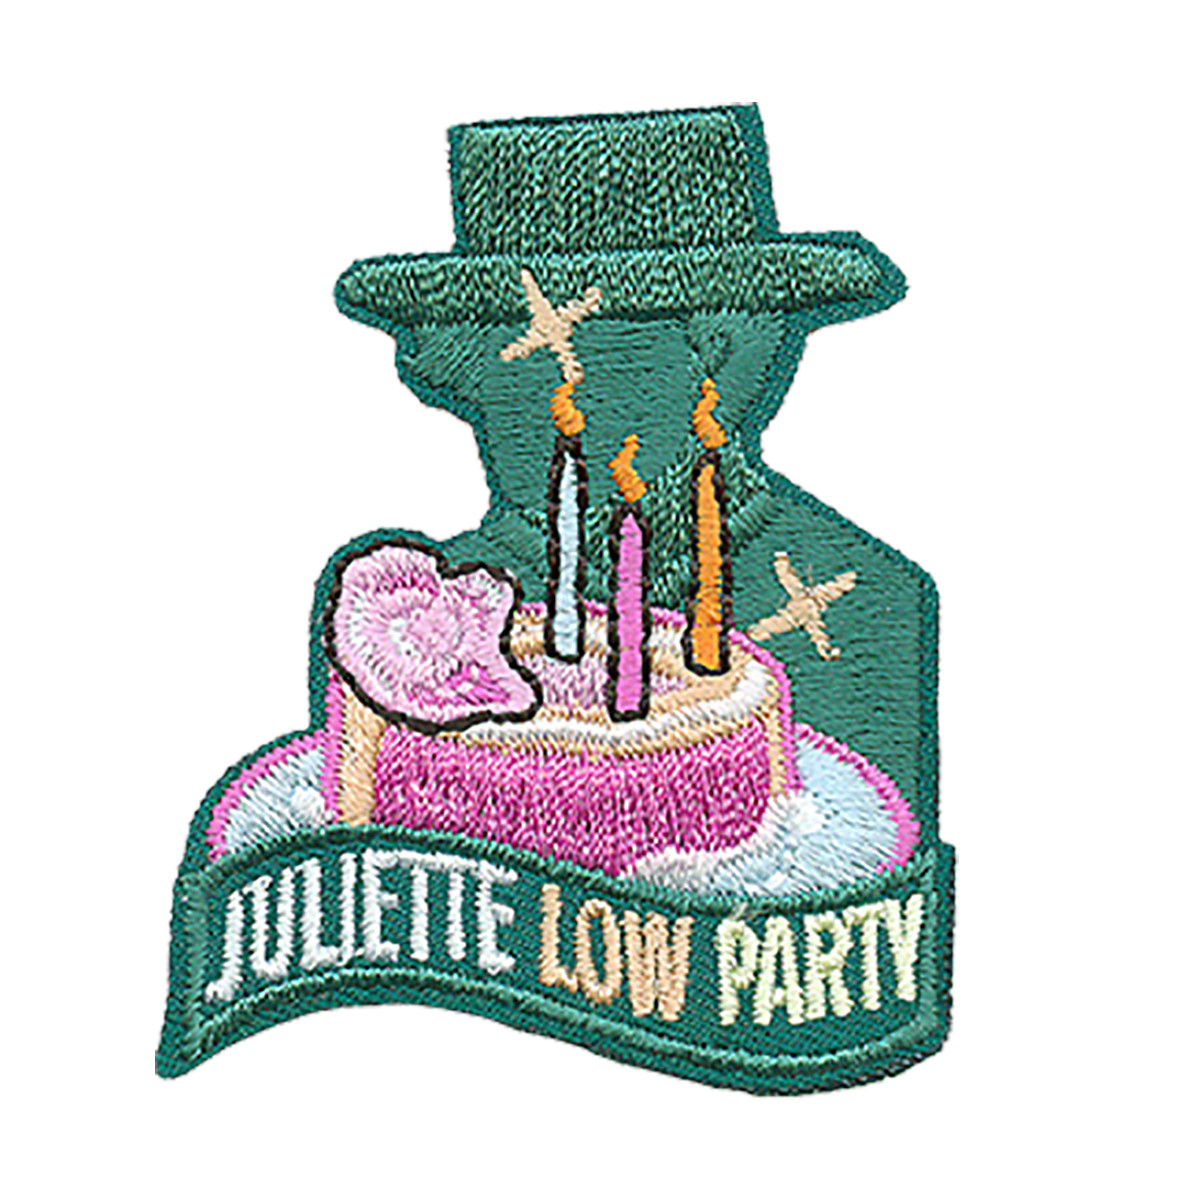 Juliette Low Party - W 